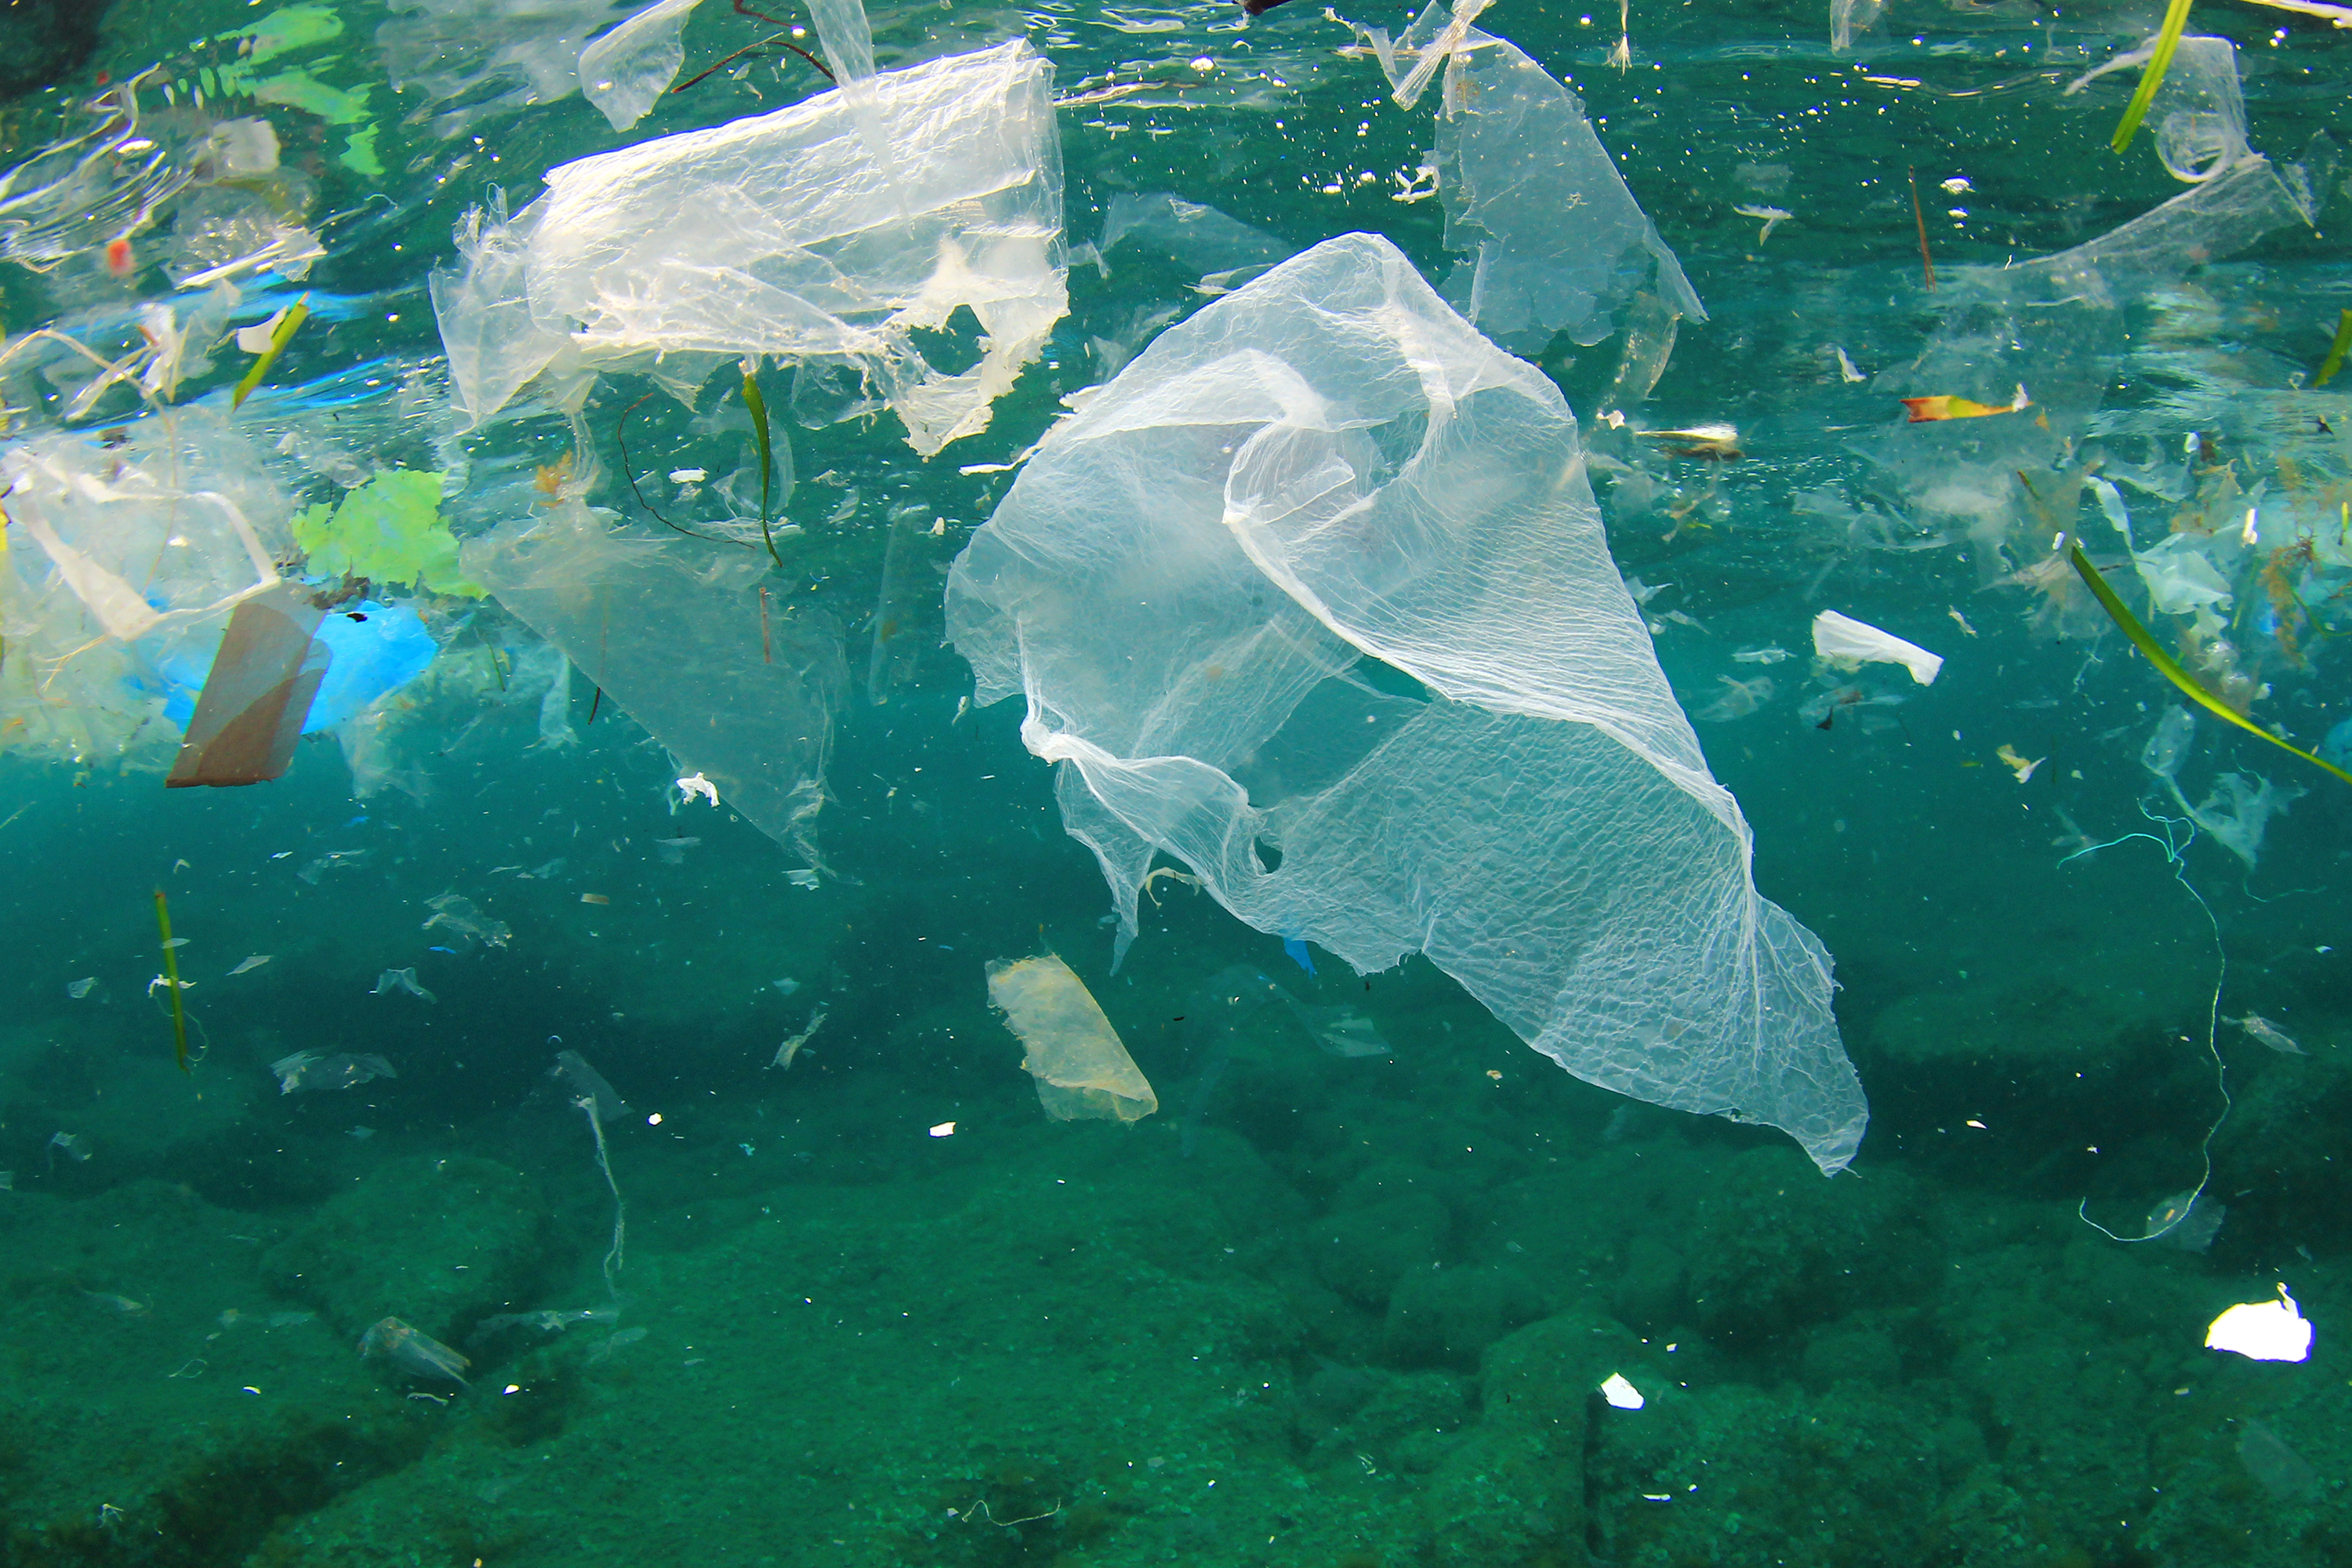 Plastic litter in ocean